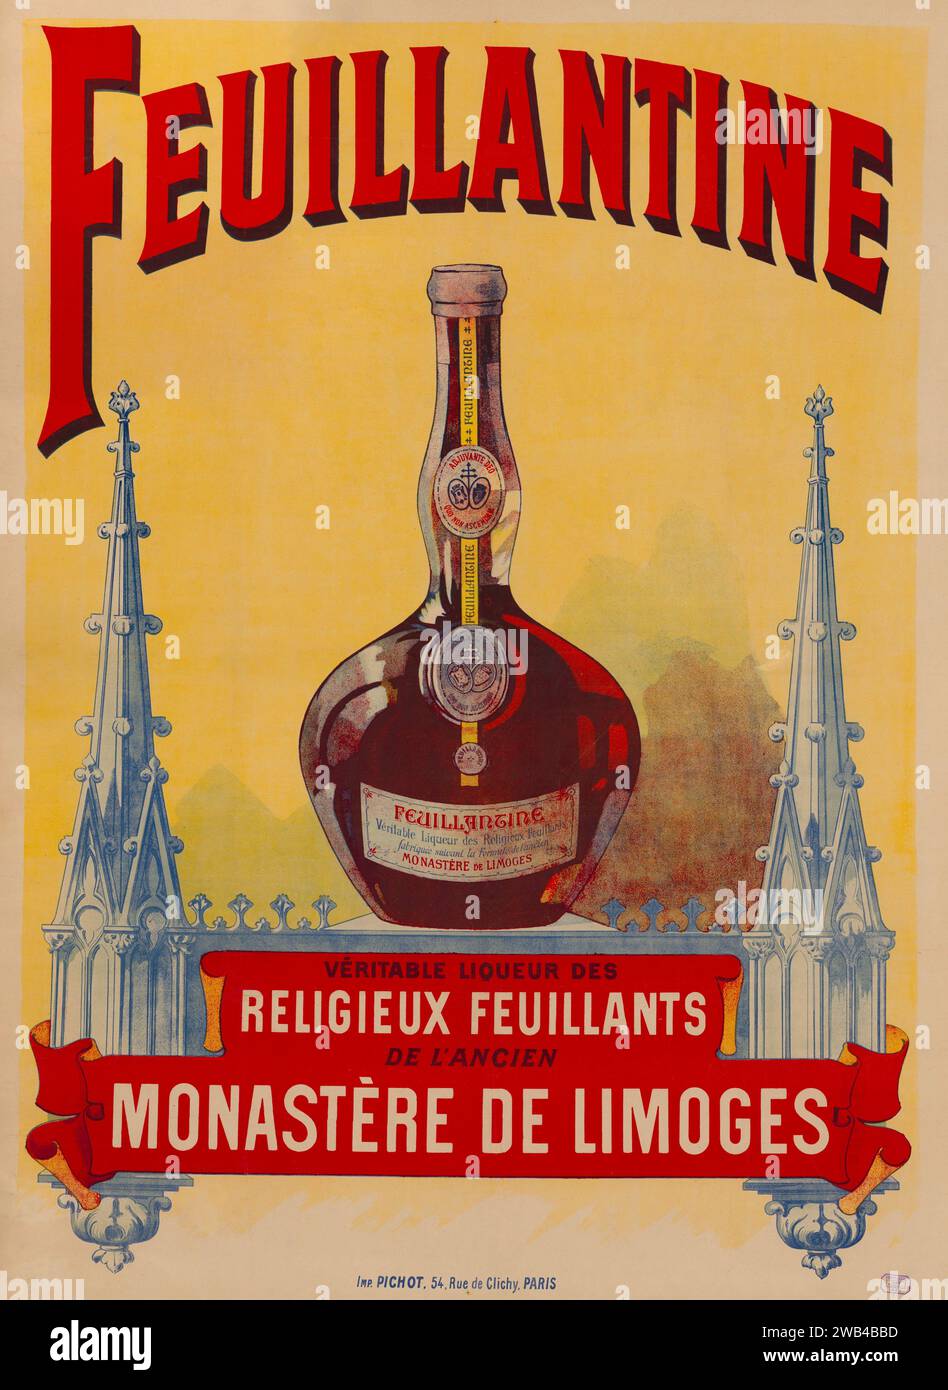 Poster pubblicitario francese per il liquore Feuillantine (un liquore prodotto dai monaci feuillants dell'ex monastero di Limoges). 1899 Foto Stock